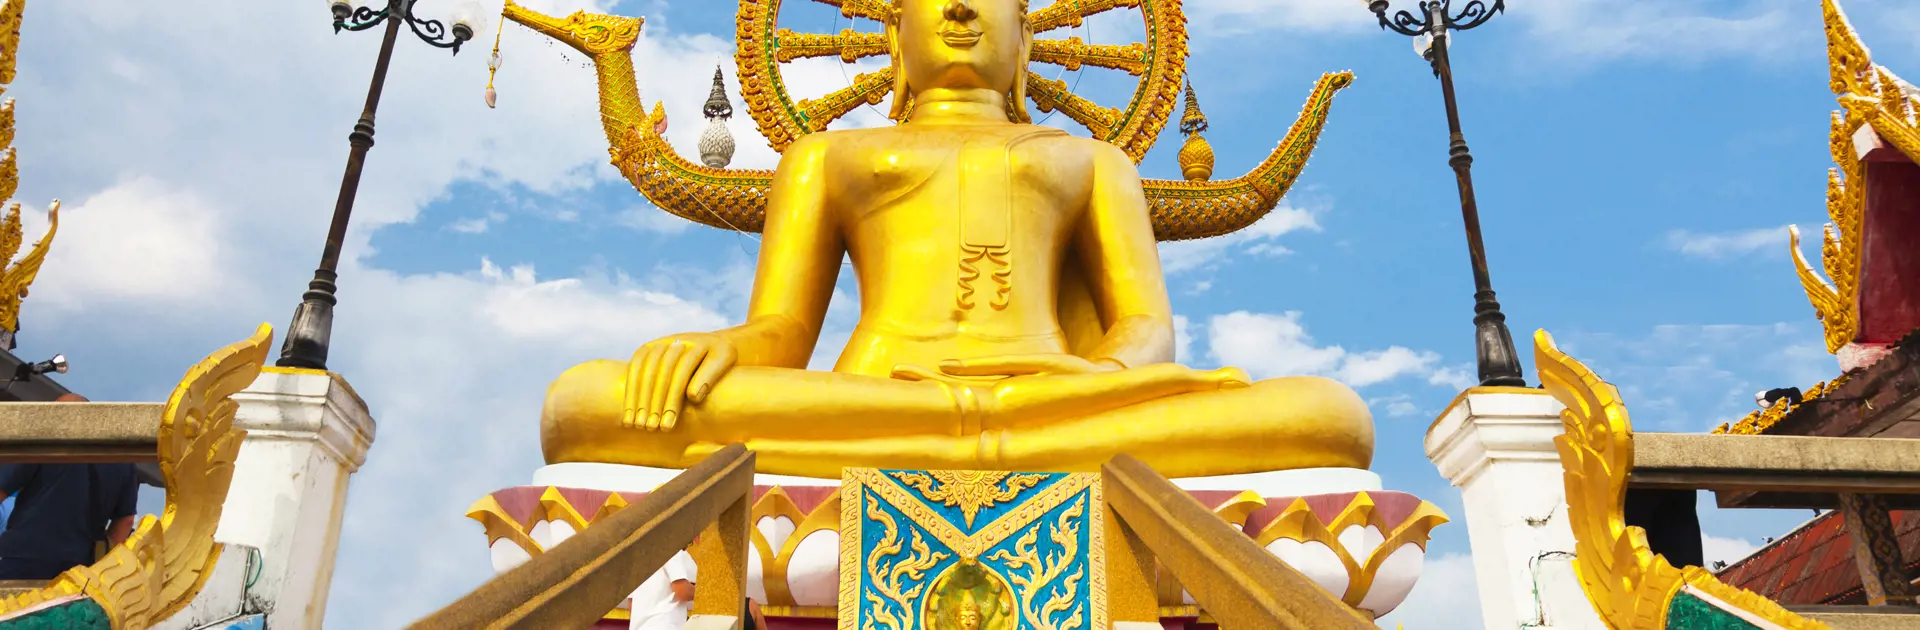 KULTUR - På Koh Samui kan I for eksempel tage på udflugt og se "Big Buddha". 